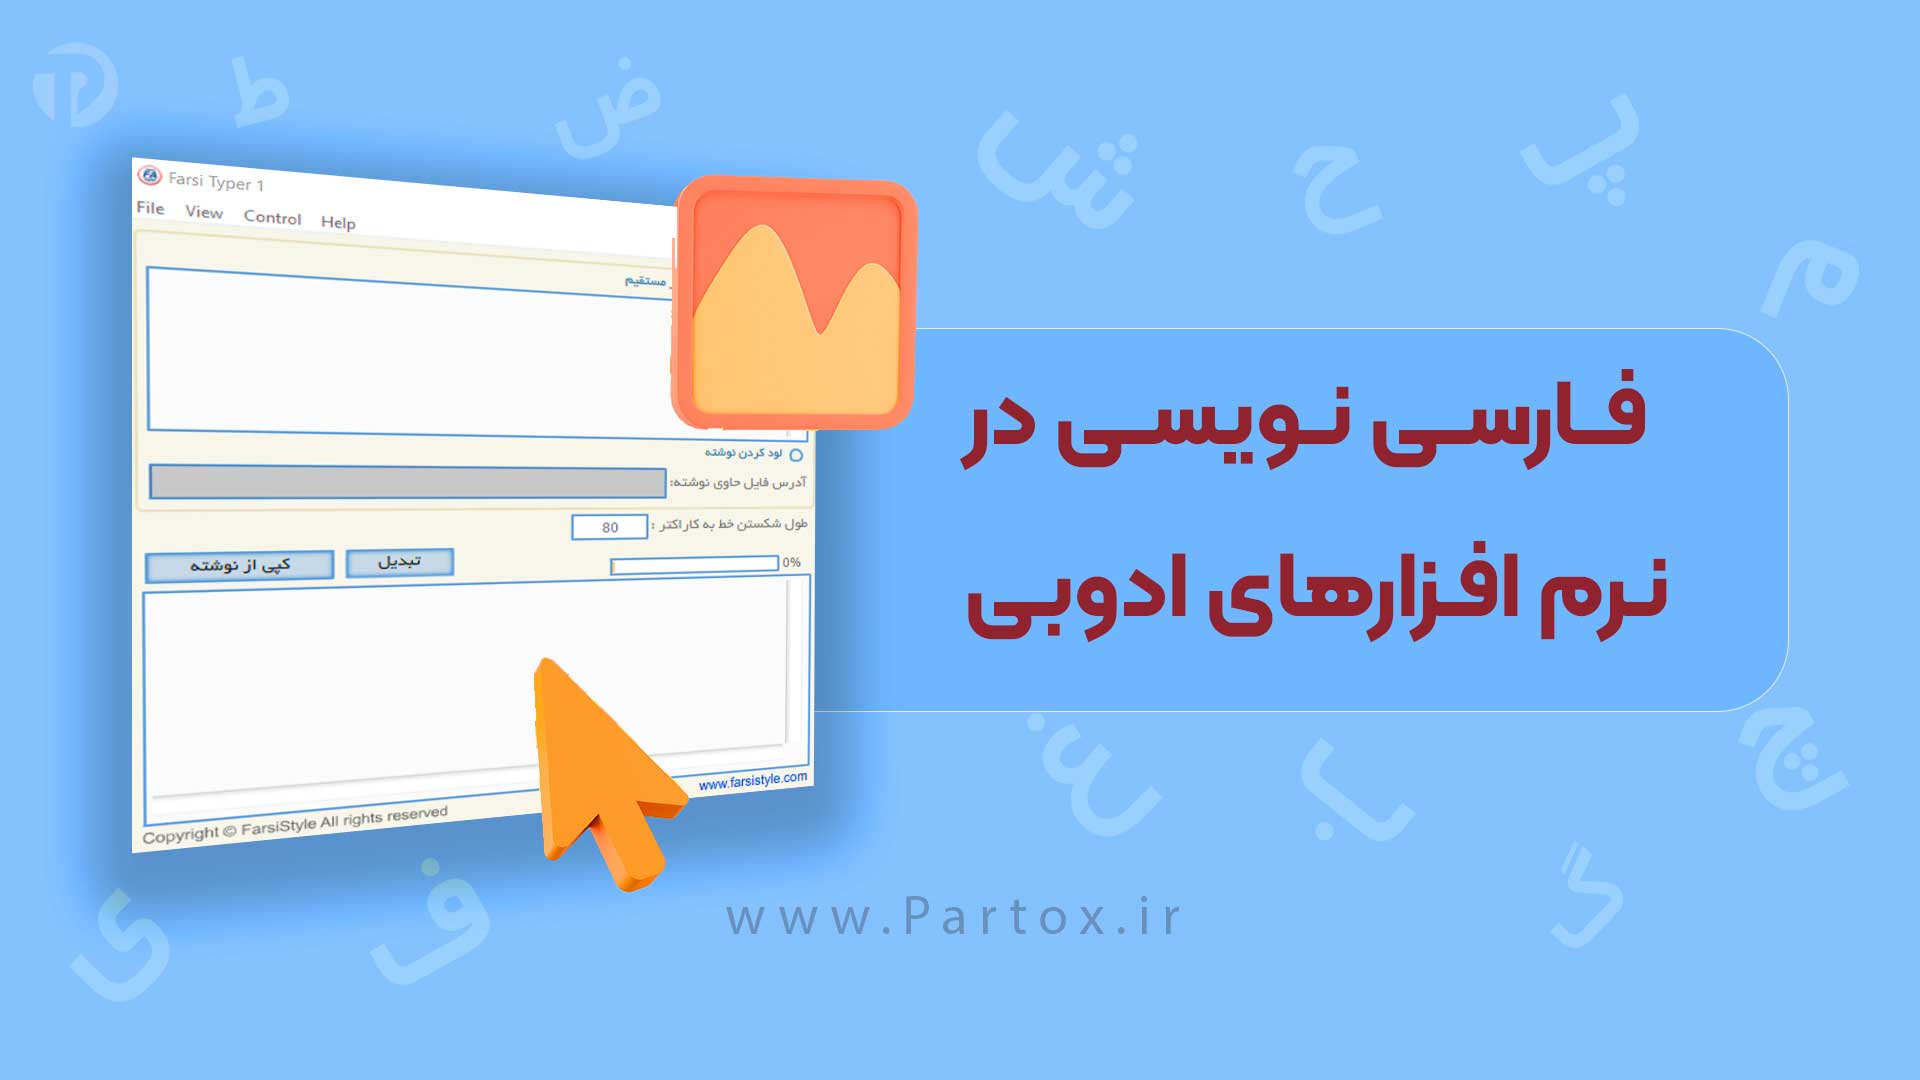 فارسی نویسی در افترافکت